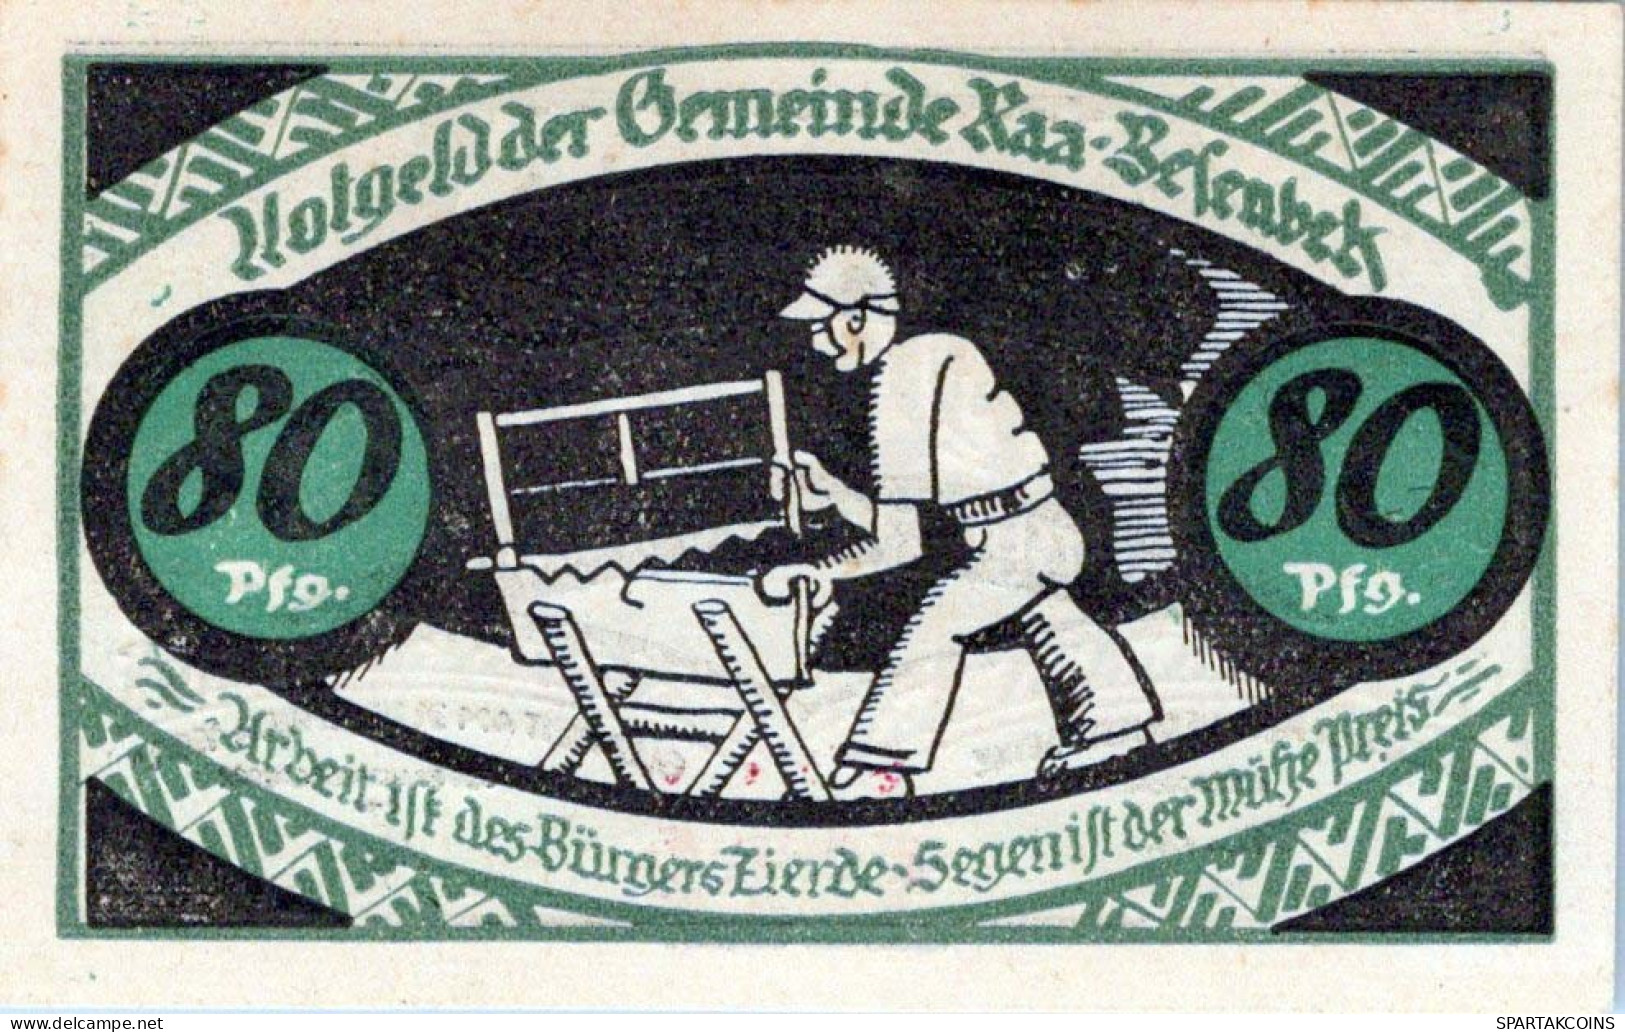 80 PFENNIG 1921 Stadt Kurzenmoor DEUTSCHLAND Notgeld Papiergeld Banknote #PG098 - Lokale Ausgaben